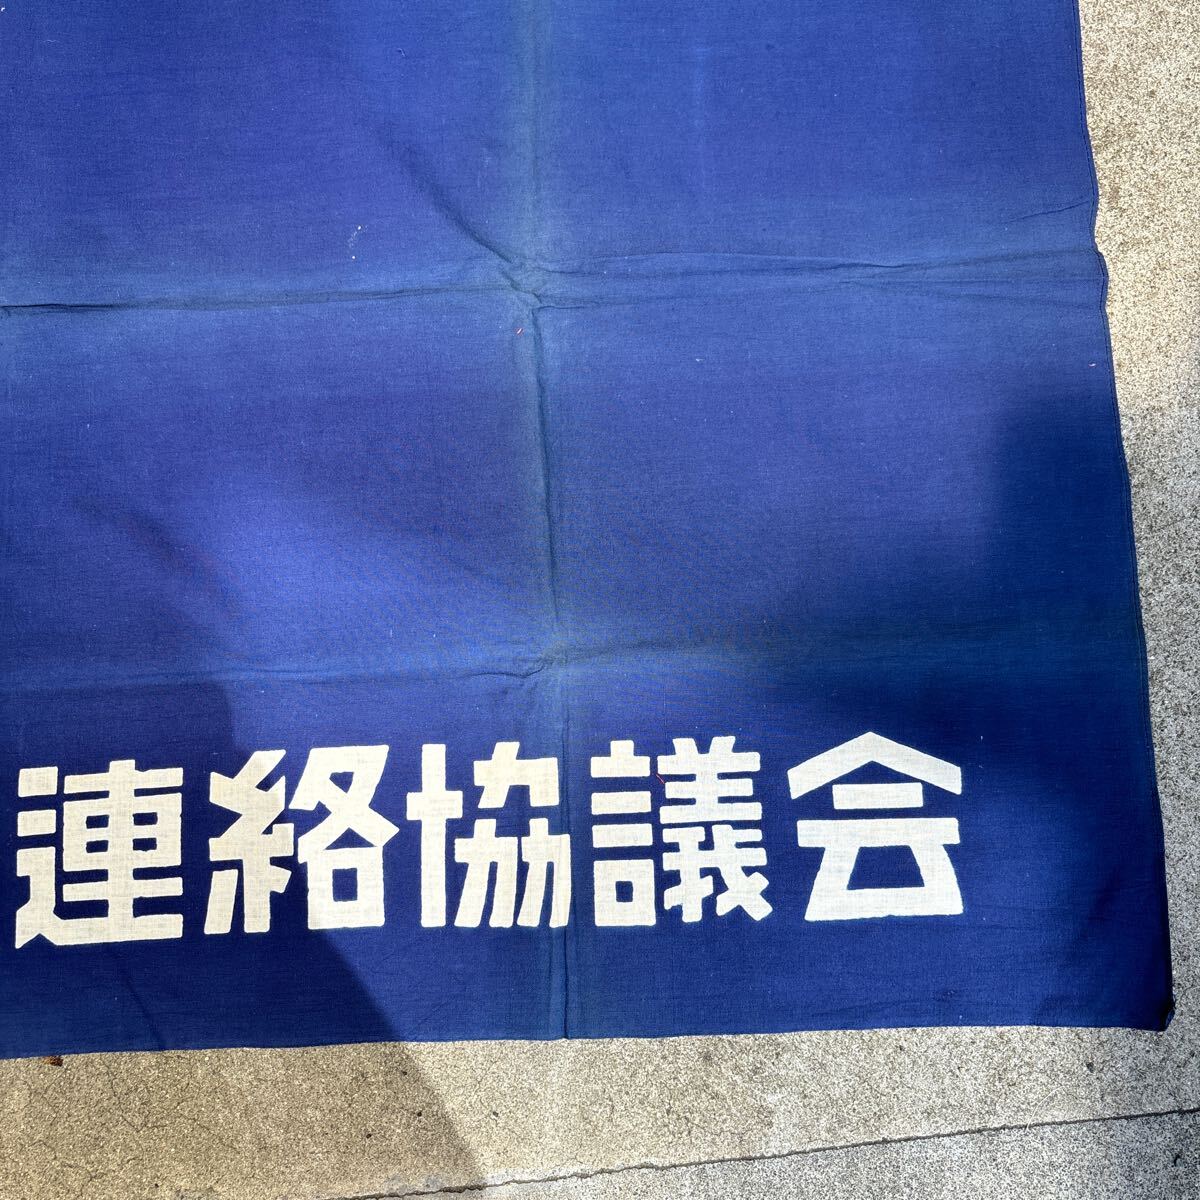 35. флаг Okayama префектура flat мир связь ... примерно 105cm×68cm осмотр ) национальный флаг flat мир флаг 